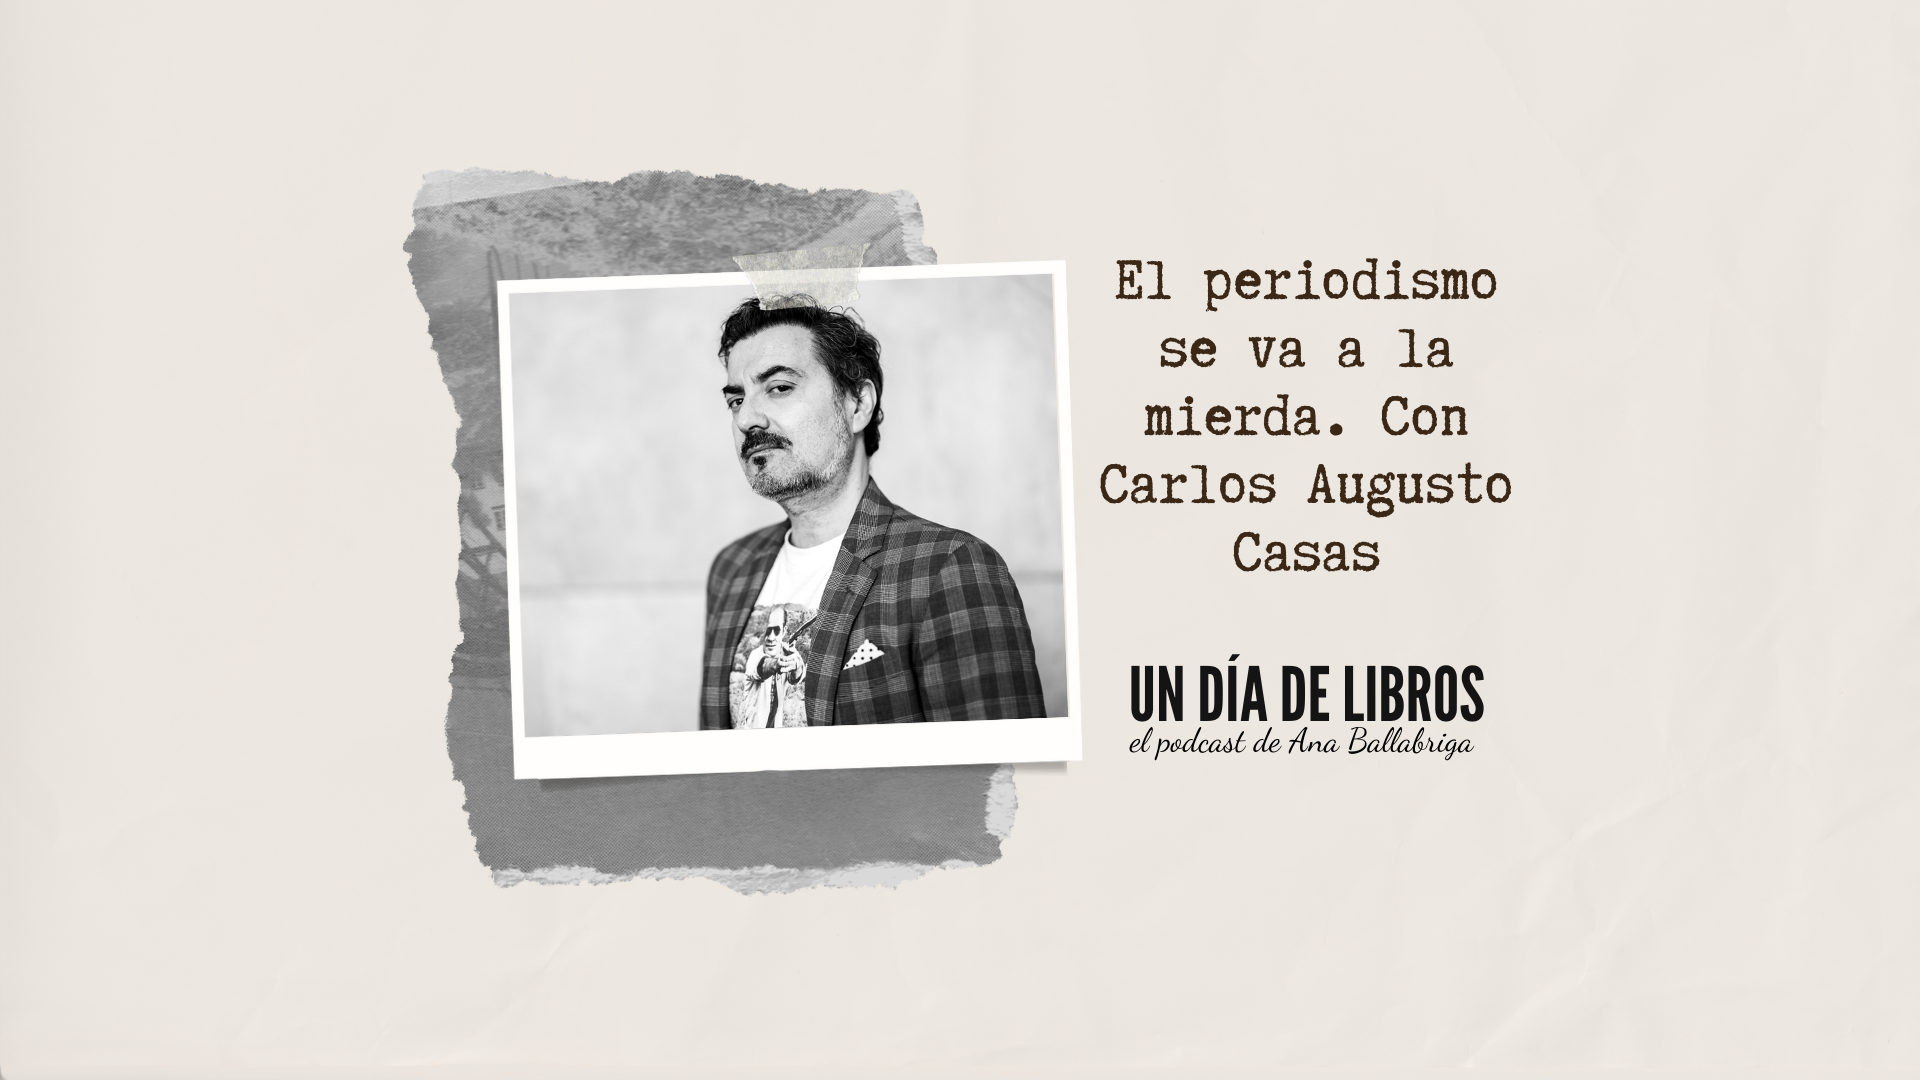 El periodismo se va a la mierda, con Carlos Augusto Casas